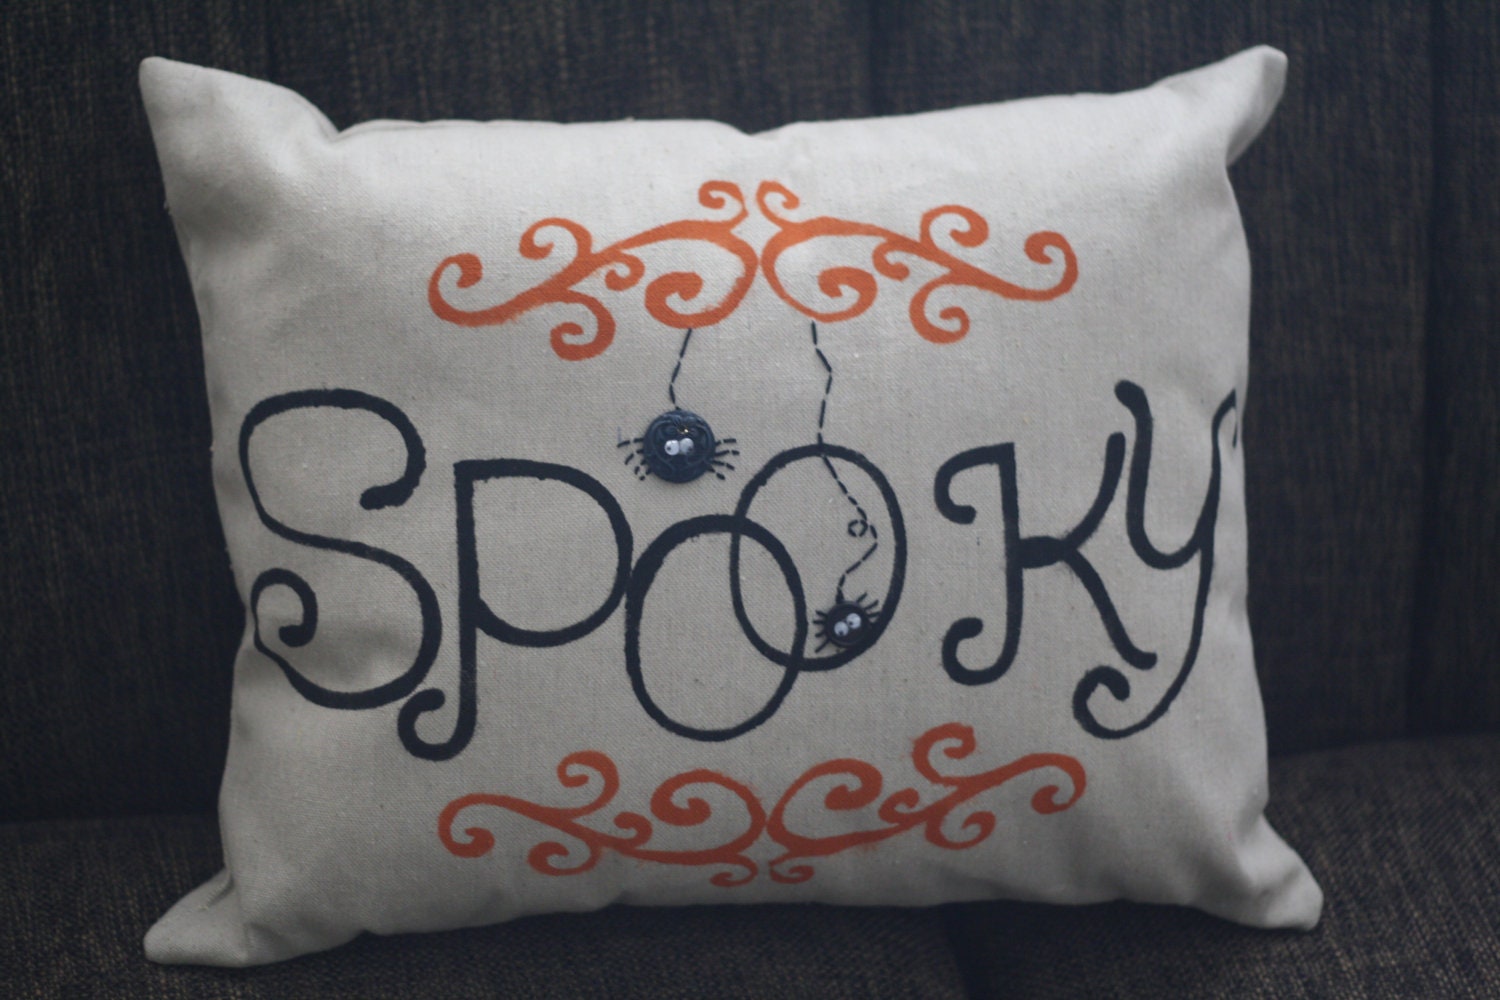 14"x18" Halloween Spooky Canvas Pillow by Totally Heidi Lynn